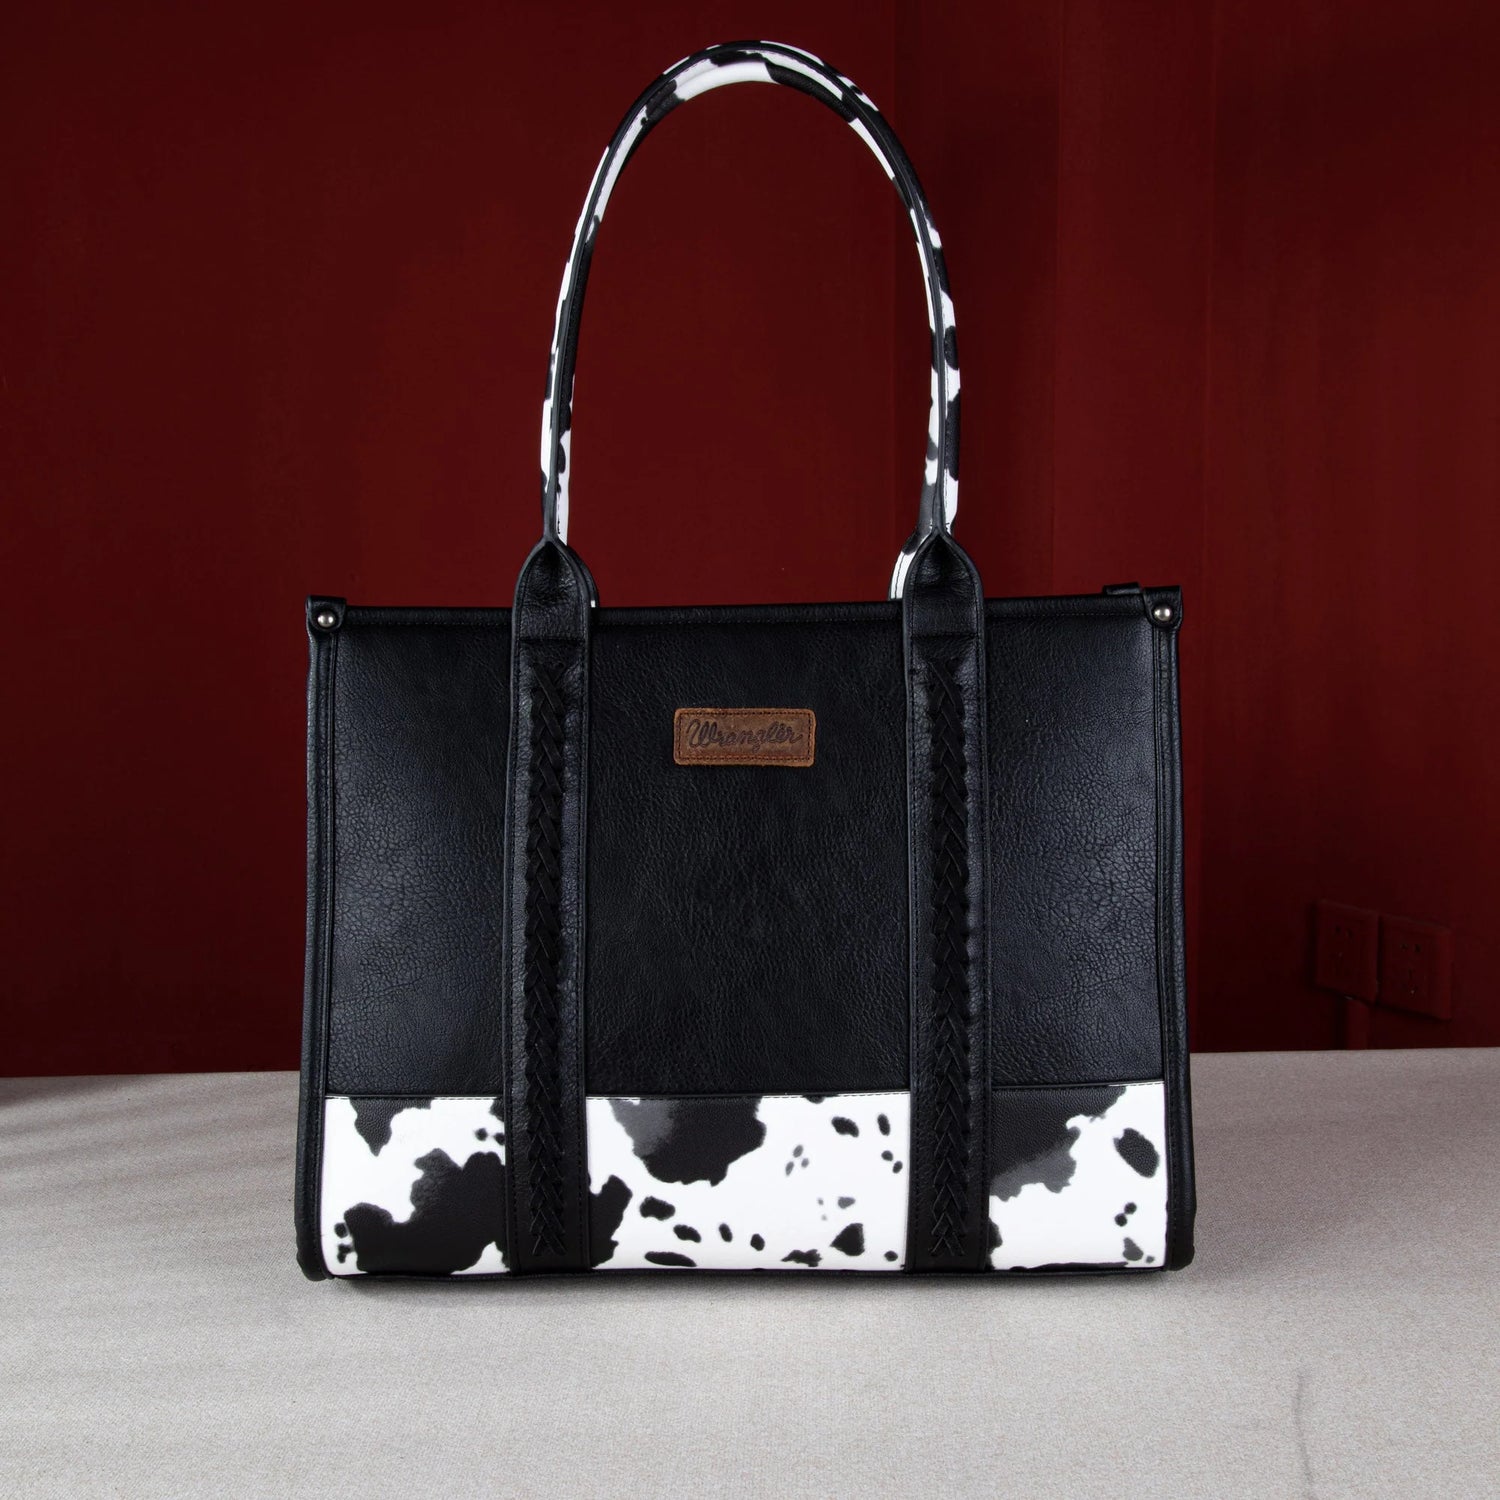 Buy Boho Boutique Women Brown Handbag BROWN Online @ Best Price in India |  Flipkart.com